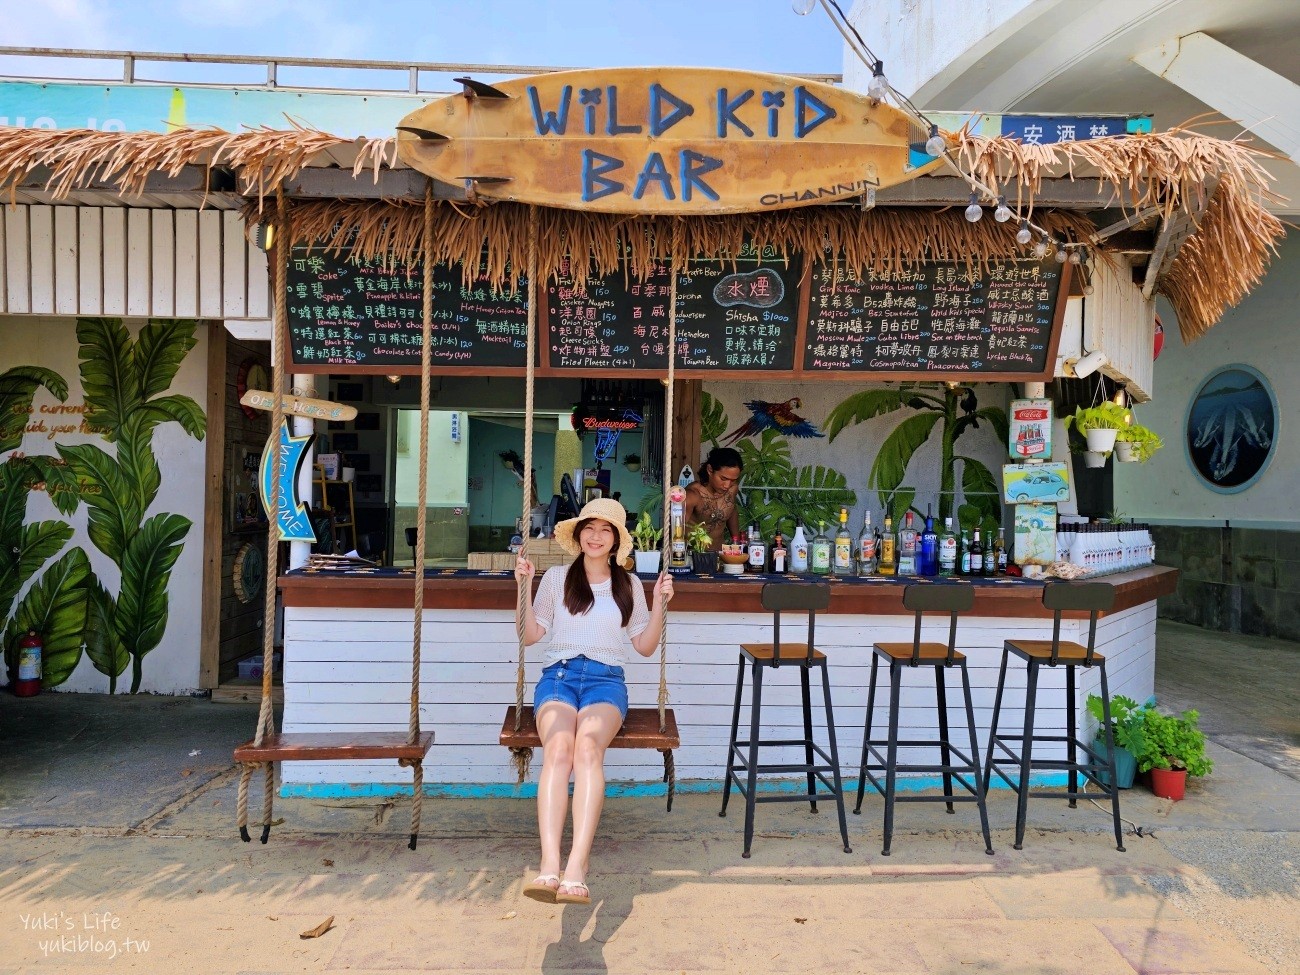 墾丁南灣野海子 WILD KID BAR，海景第一排景觀餐廳咖啡酒吧、峇里島風盪鞦韆氣氛滿分！ - yukiblog.tw